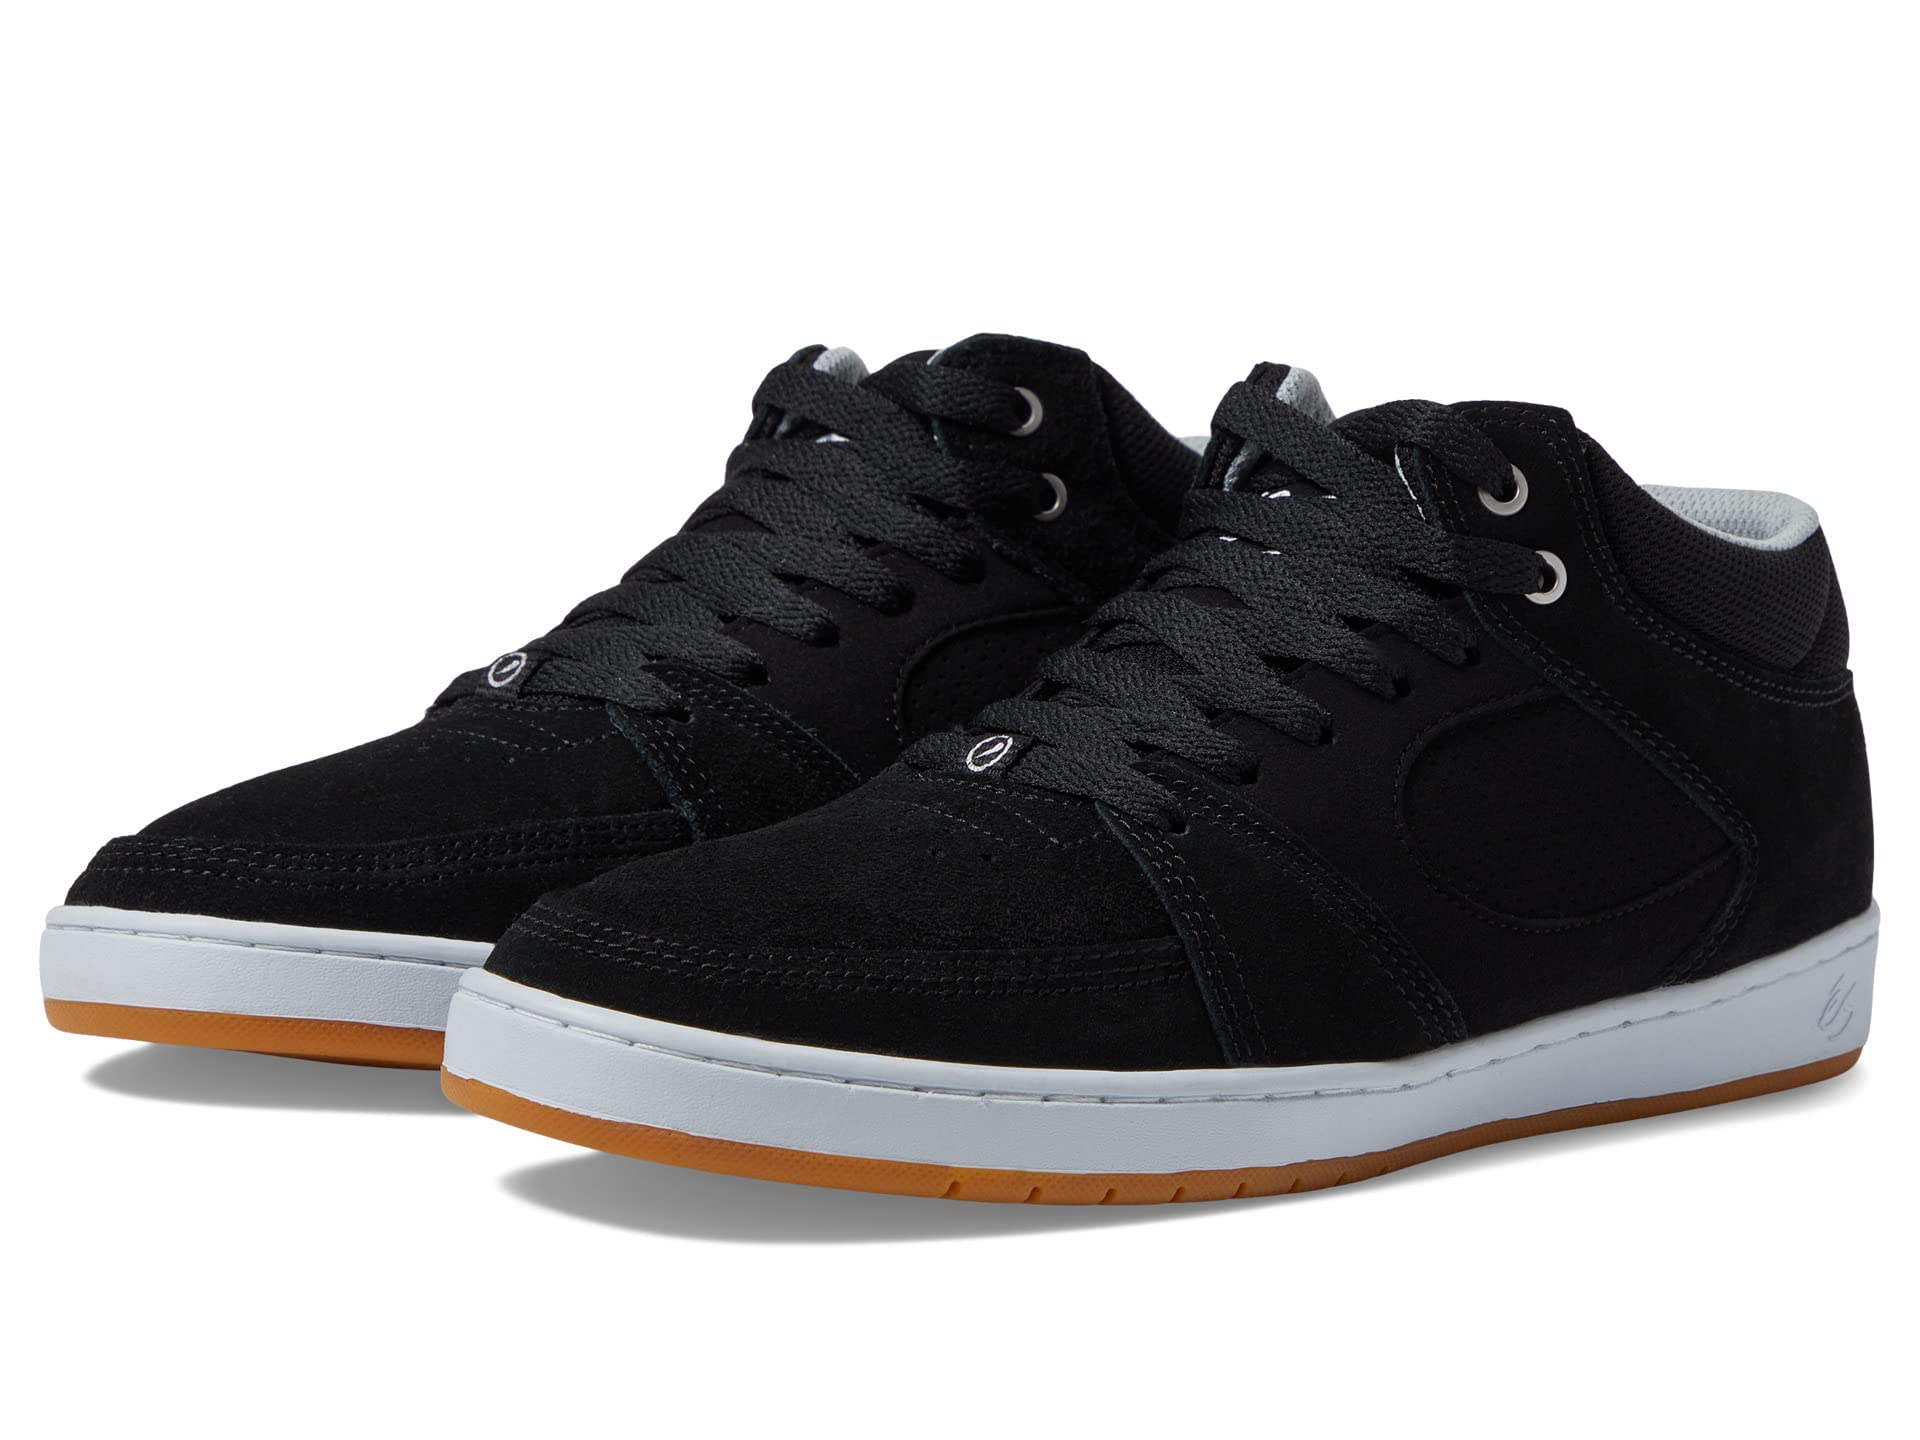 SE Men's Sneakers Skate Shoe, Black/White/Silver, 28.0 cm